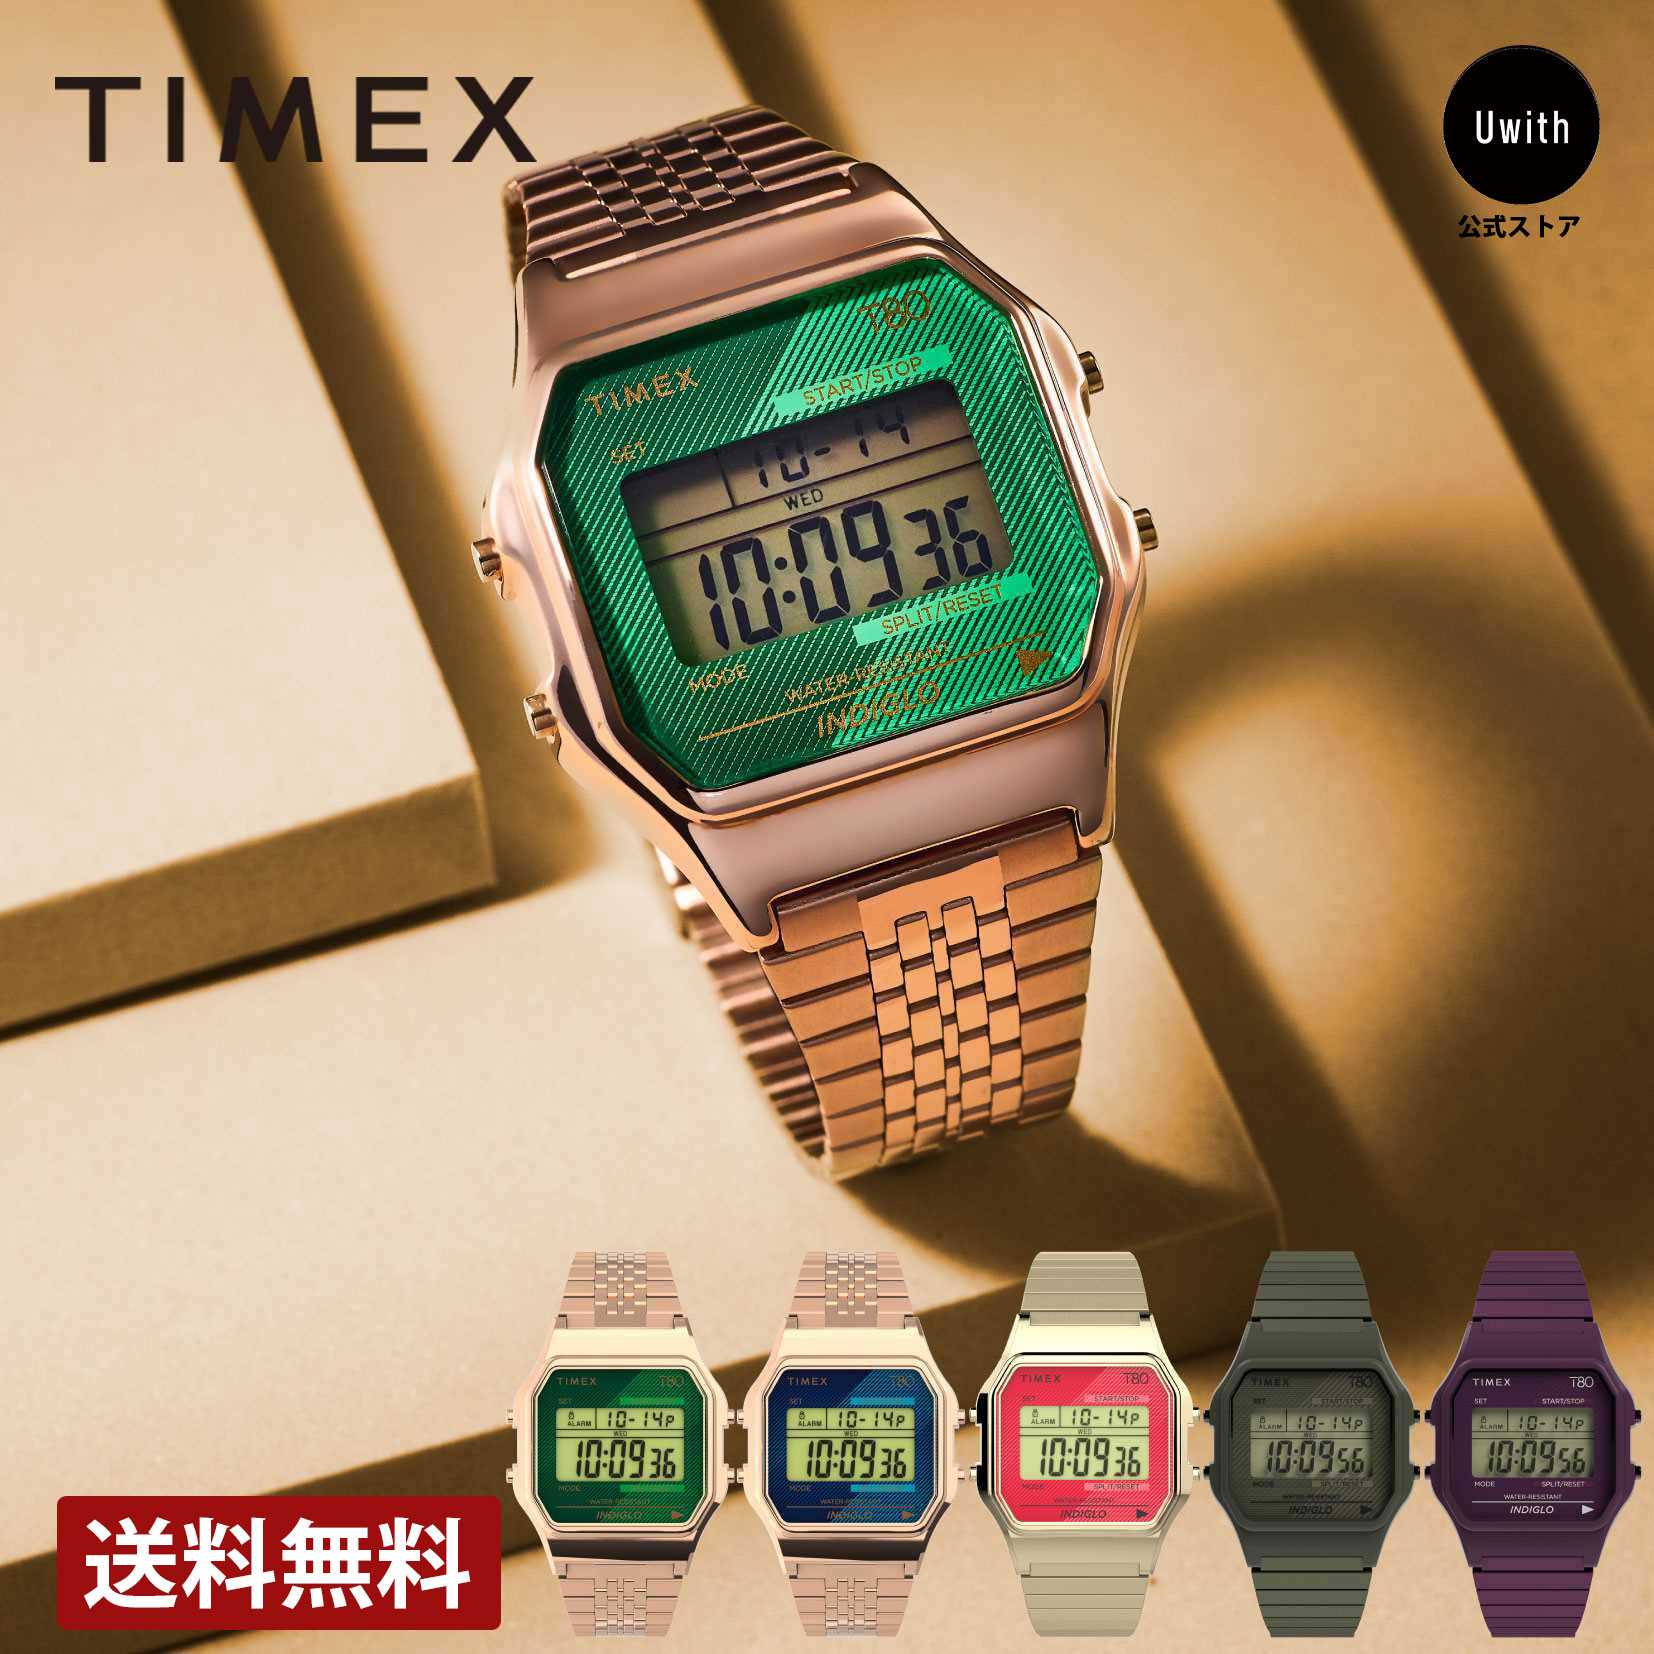 タイメックス 【公式ストア】TIMEX タイメックス TIMEX 80 腕時計 アメリカNo.1ウォッチブランド メンズ レディース 定番 人気 全5モデル ゴールド / パープル / グリーン / レッド / ブルー